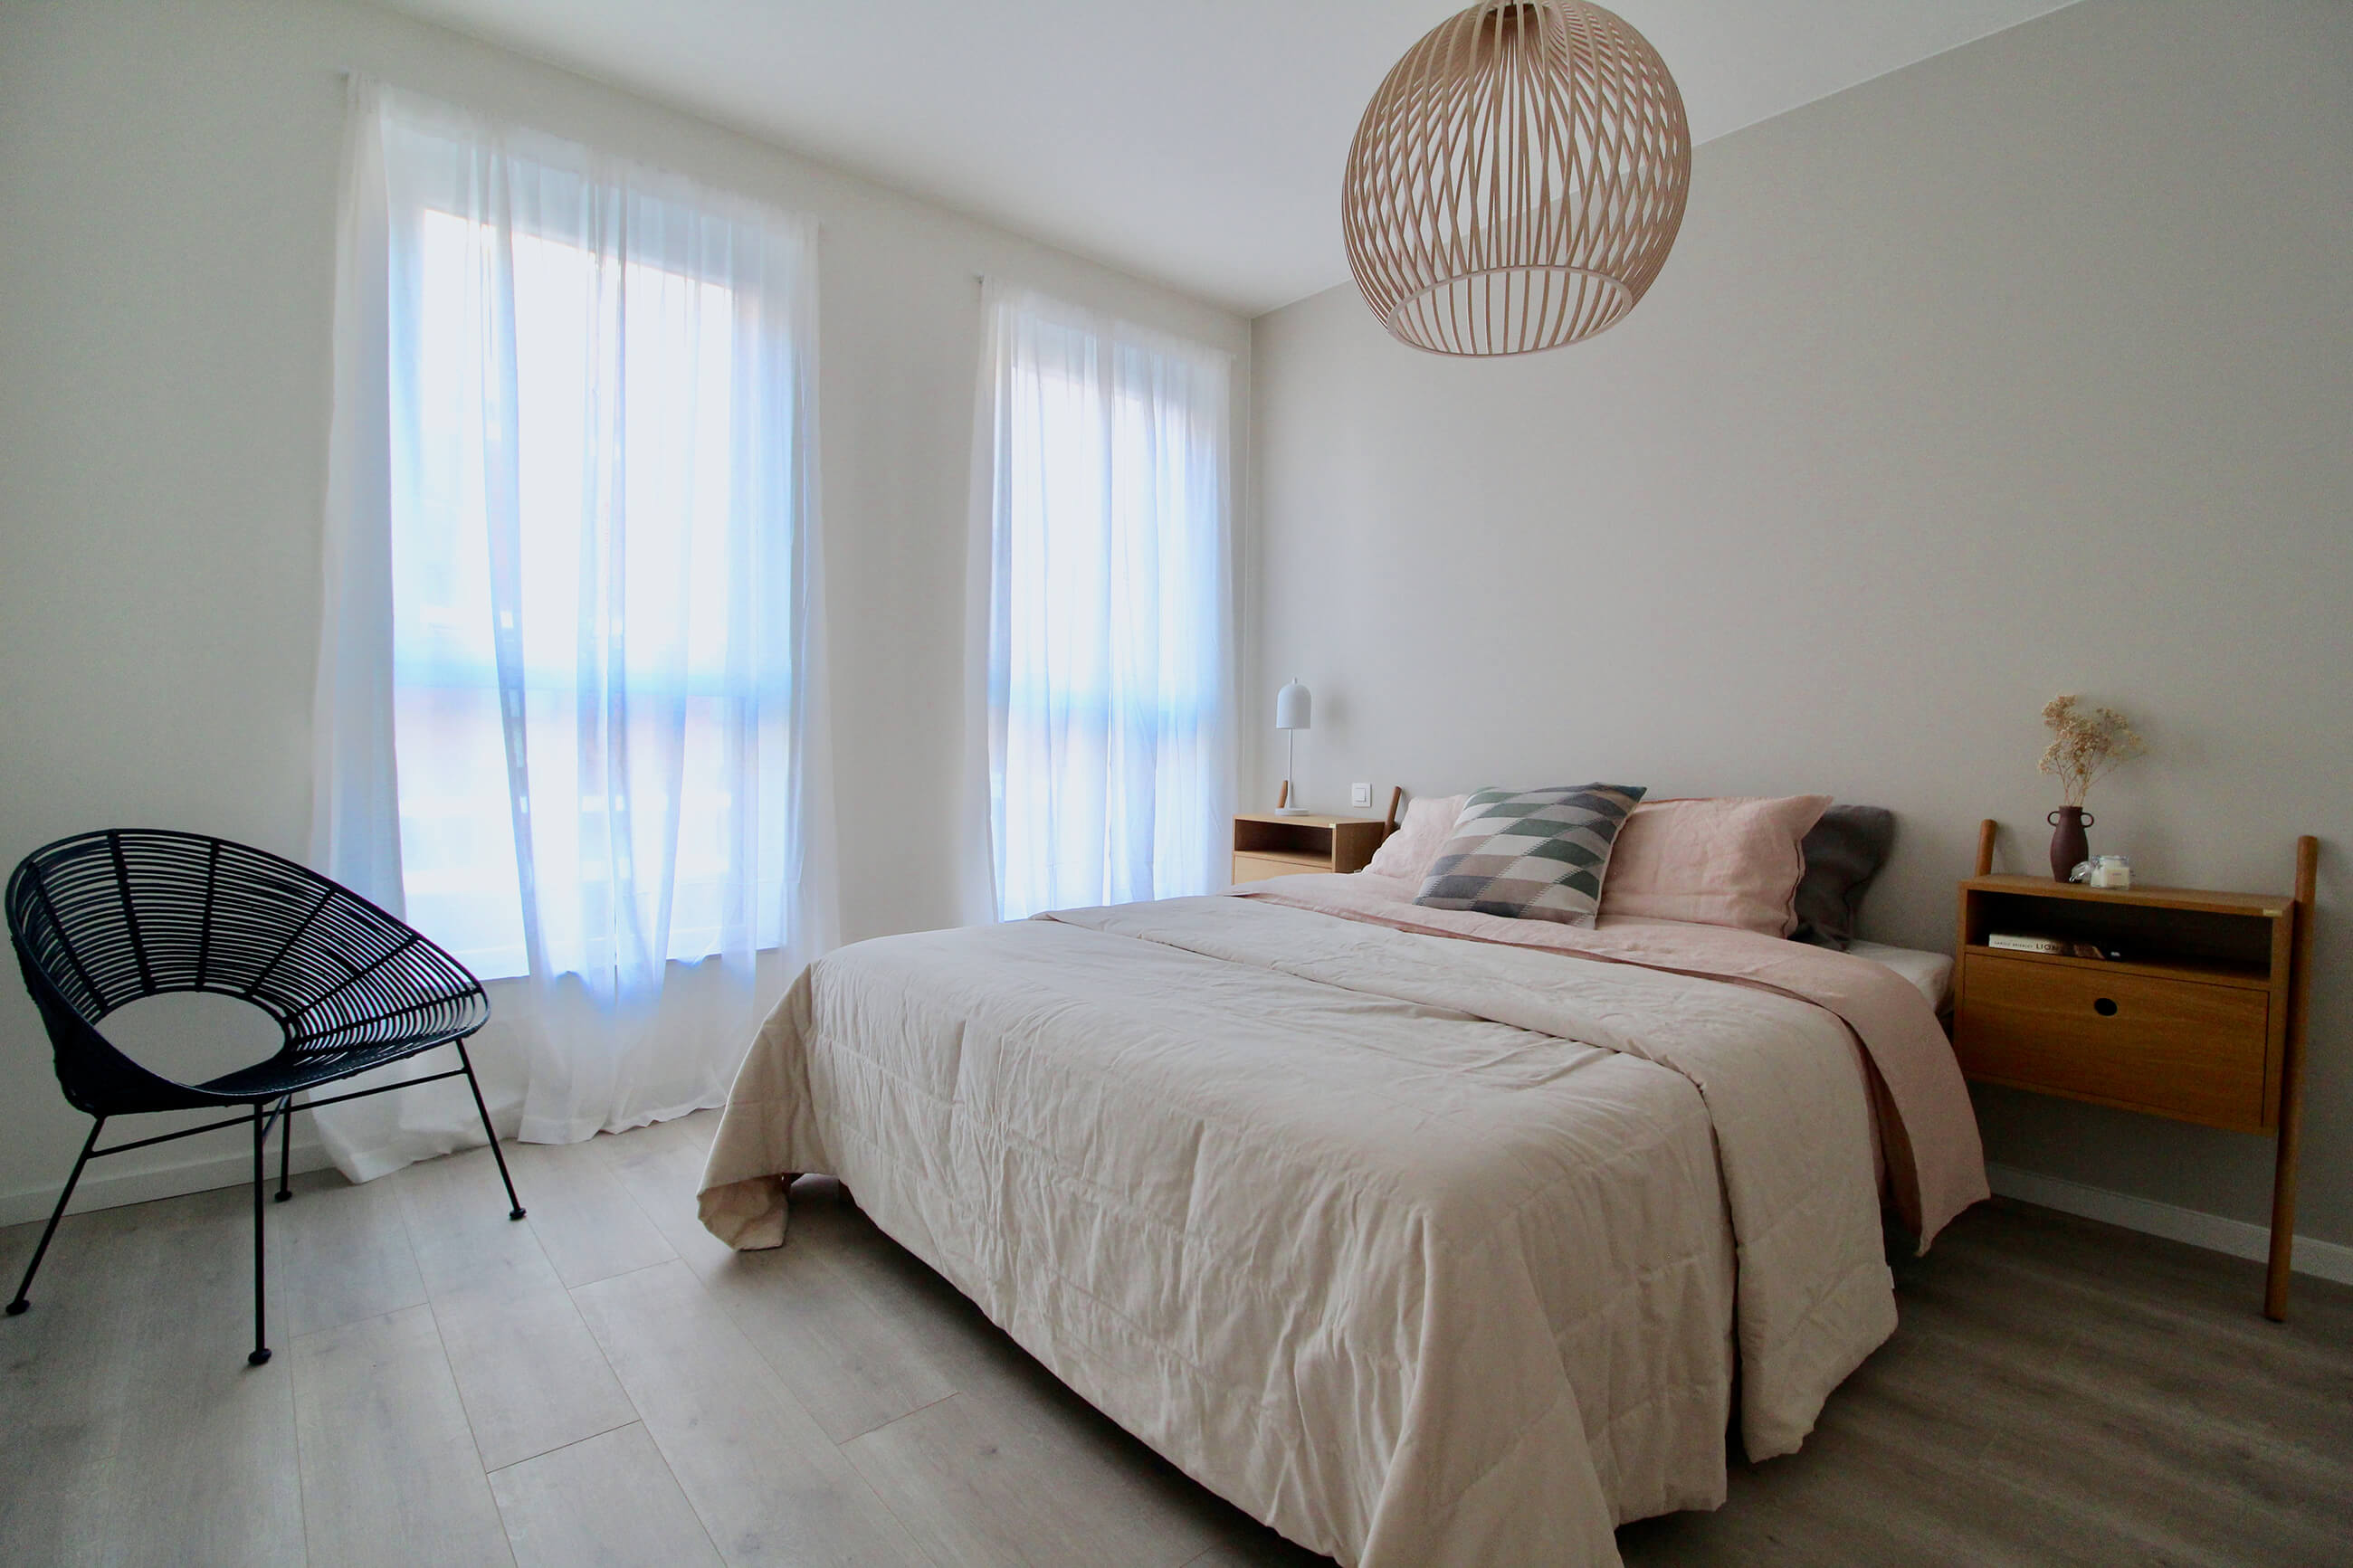 Een rustgevende slaapkamer met veel lichtinval in een nieuwbouwappartement van De Smedenpoort.